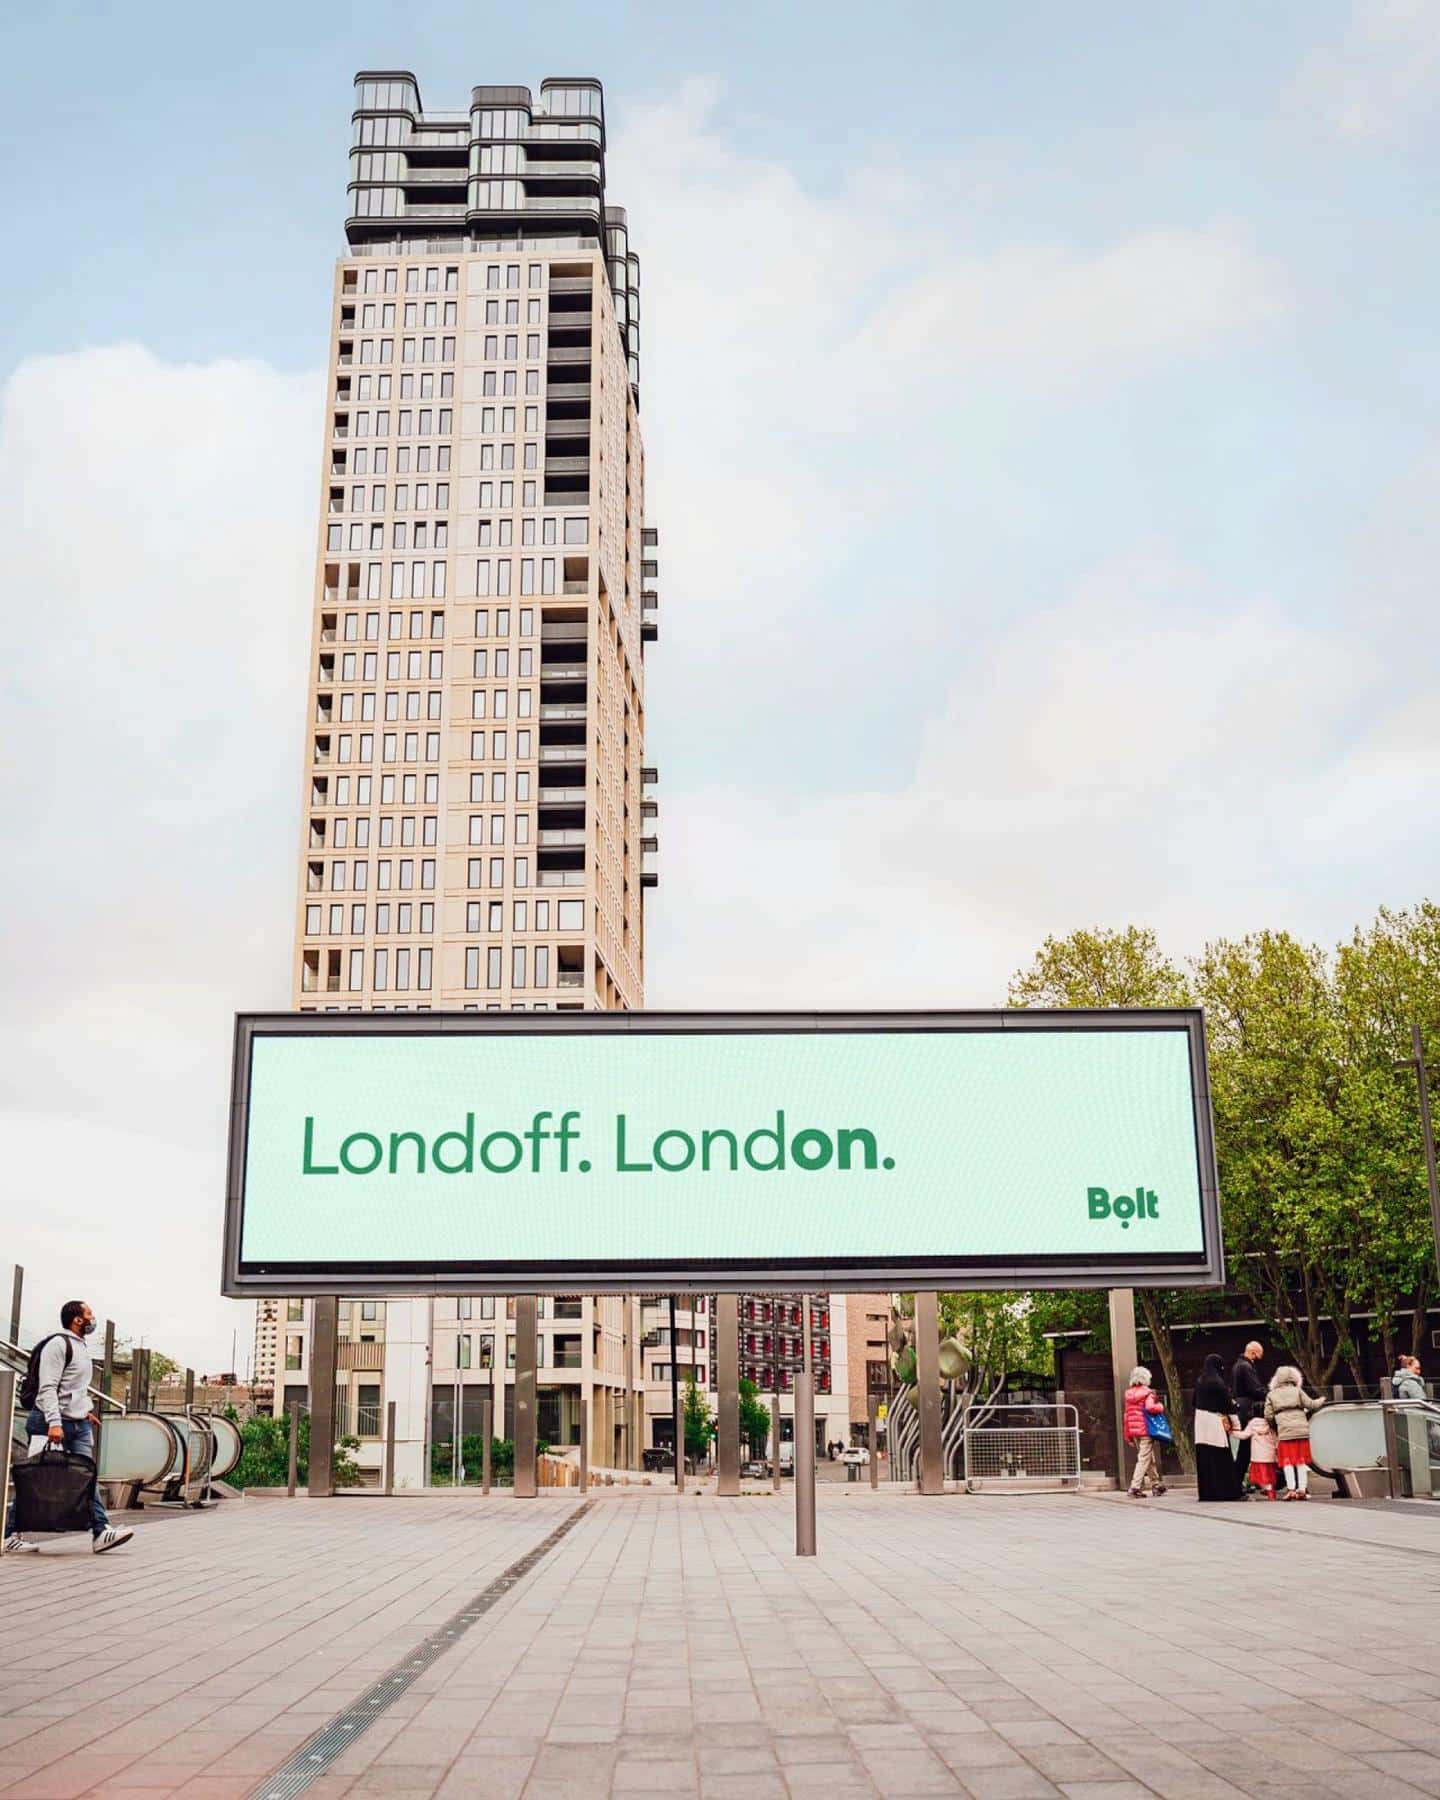 Londoff-London: egyszerűen nagyszerű hirdetési szöveg a Bolttól.